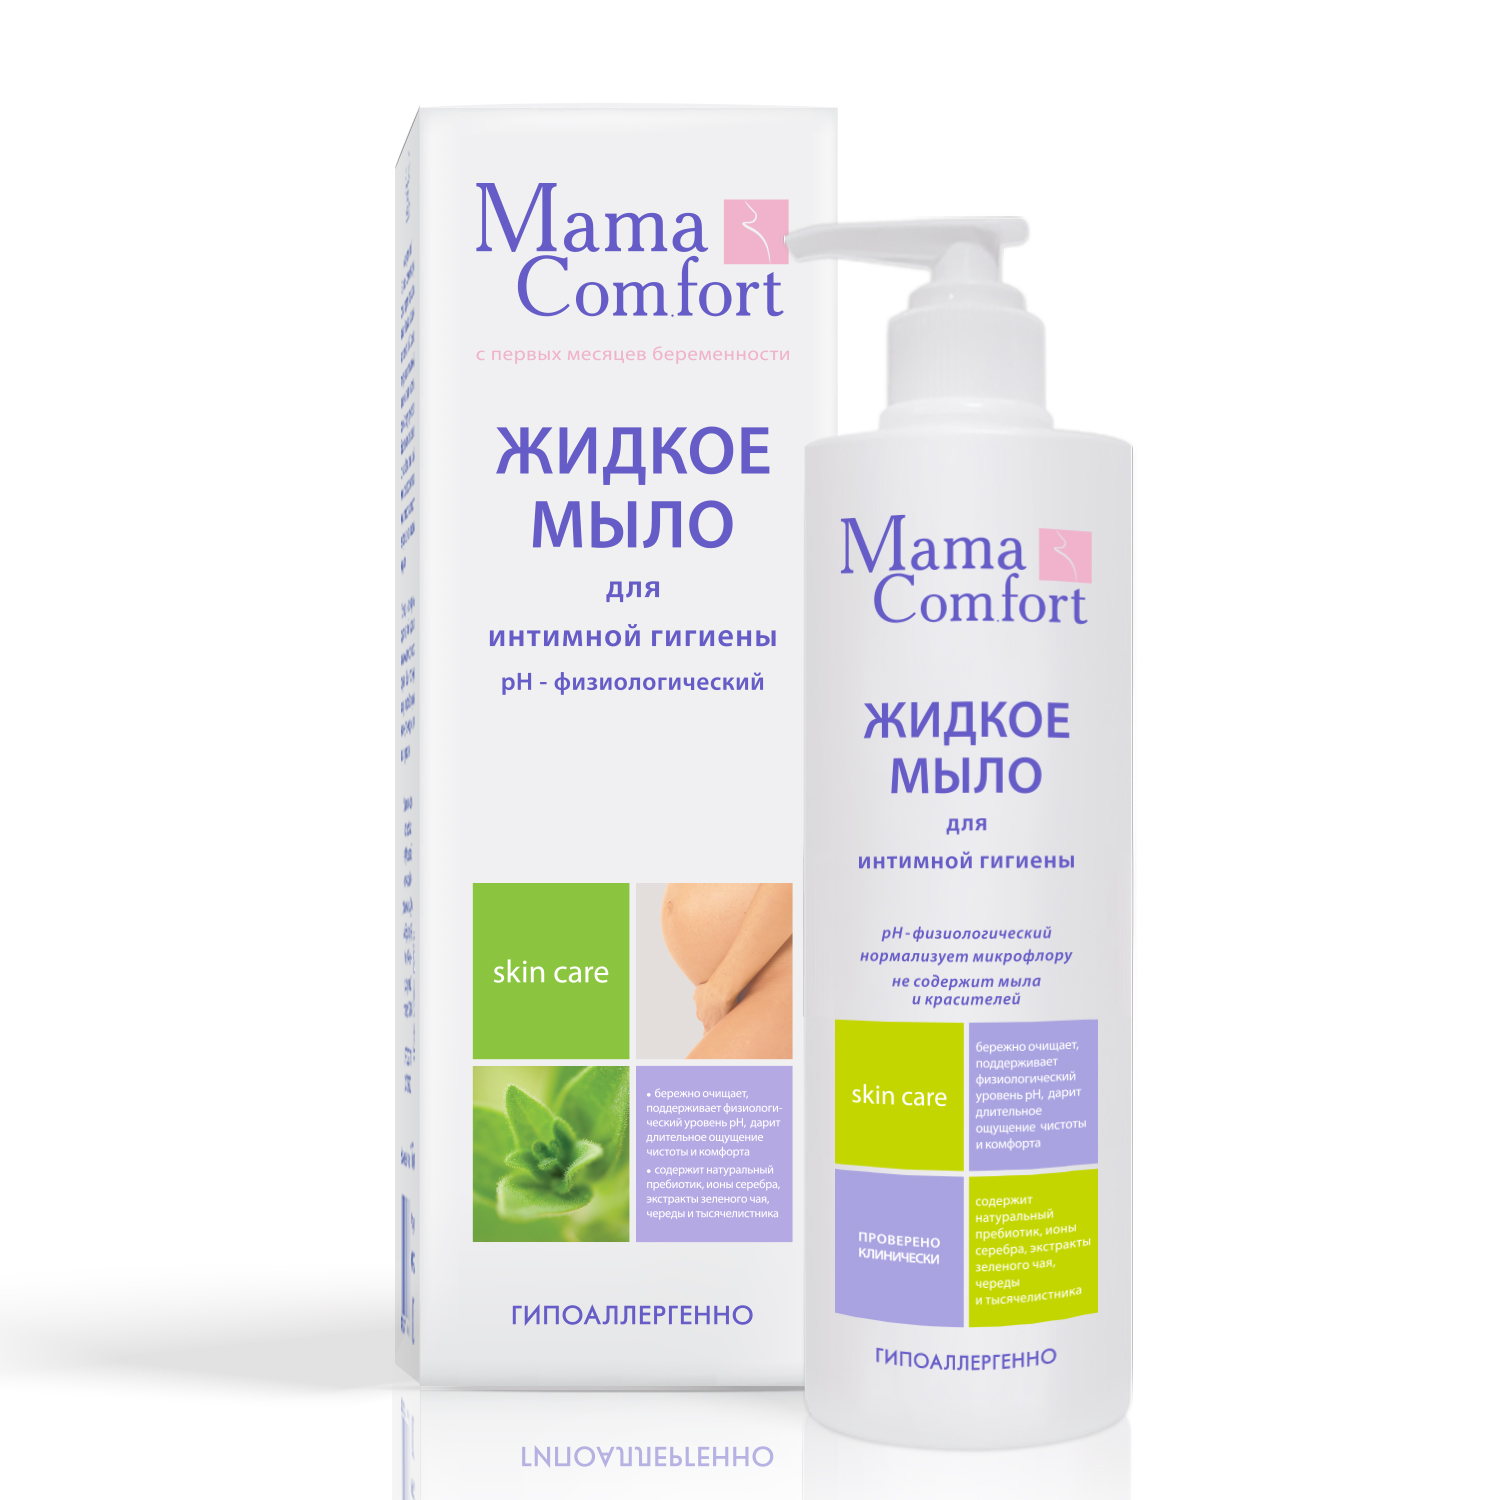 Средство для интимной гигиены Mama Comfort Для интимной гигиены 250 мл e rasy ирейзеры влажные для интимной гигиены для женщин 24